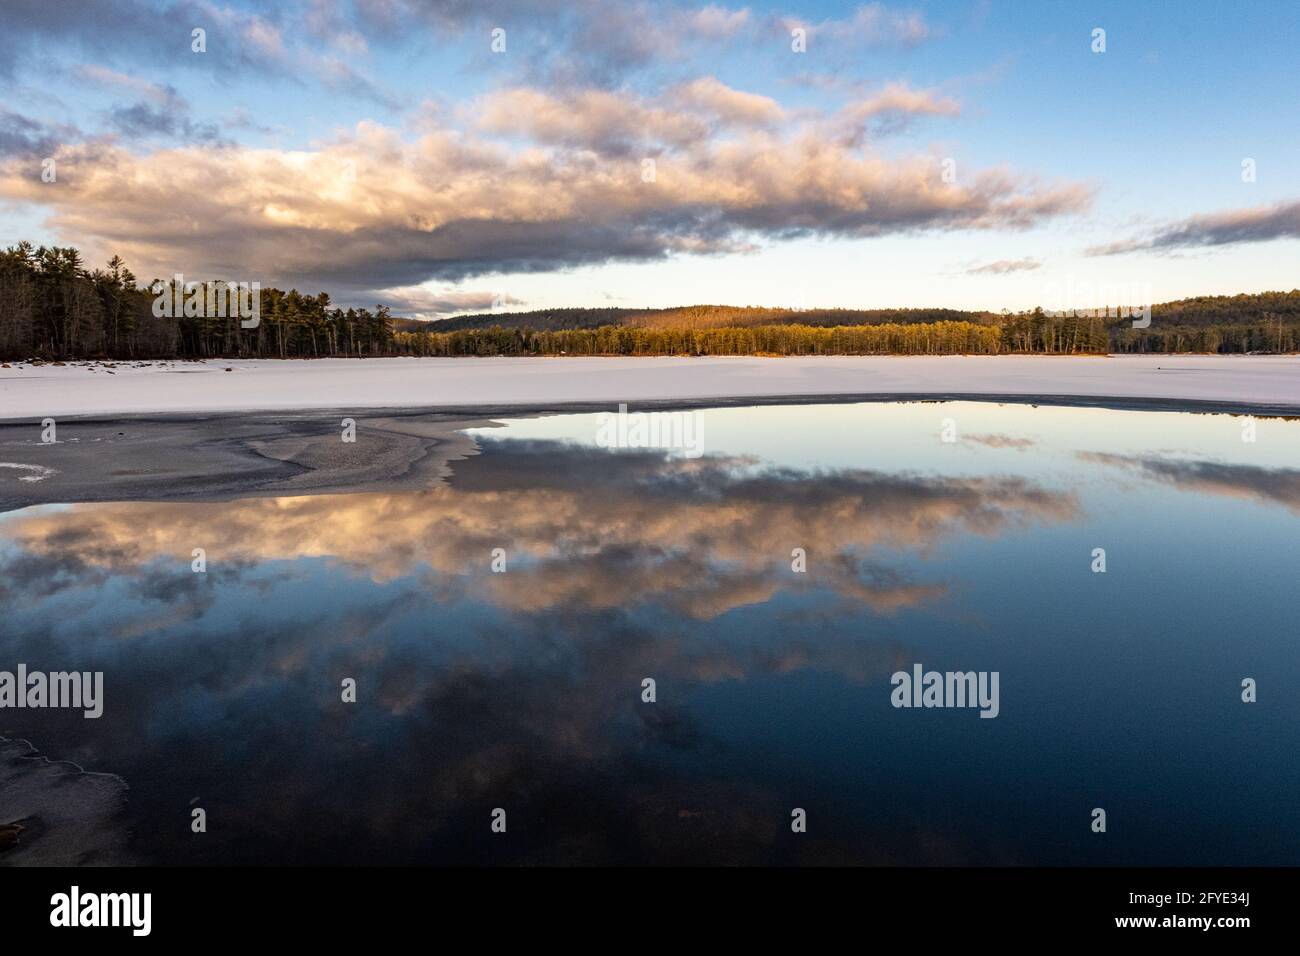 Il livello dell'acqua è piuttosto basso presso il lago Tully a Royalston, Massachusetts Foto Stock